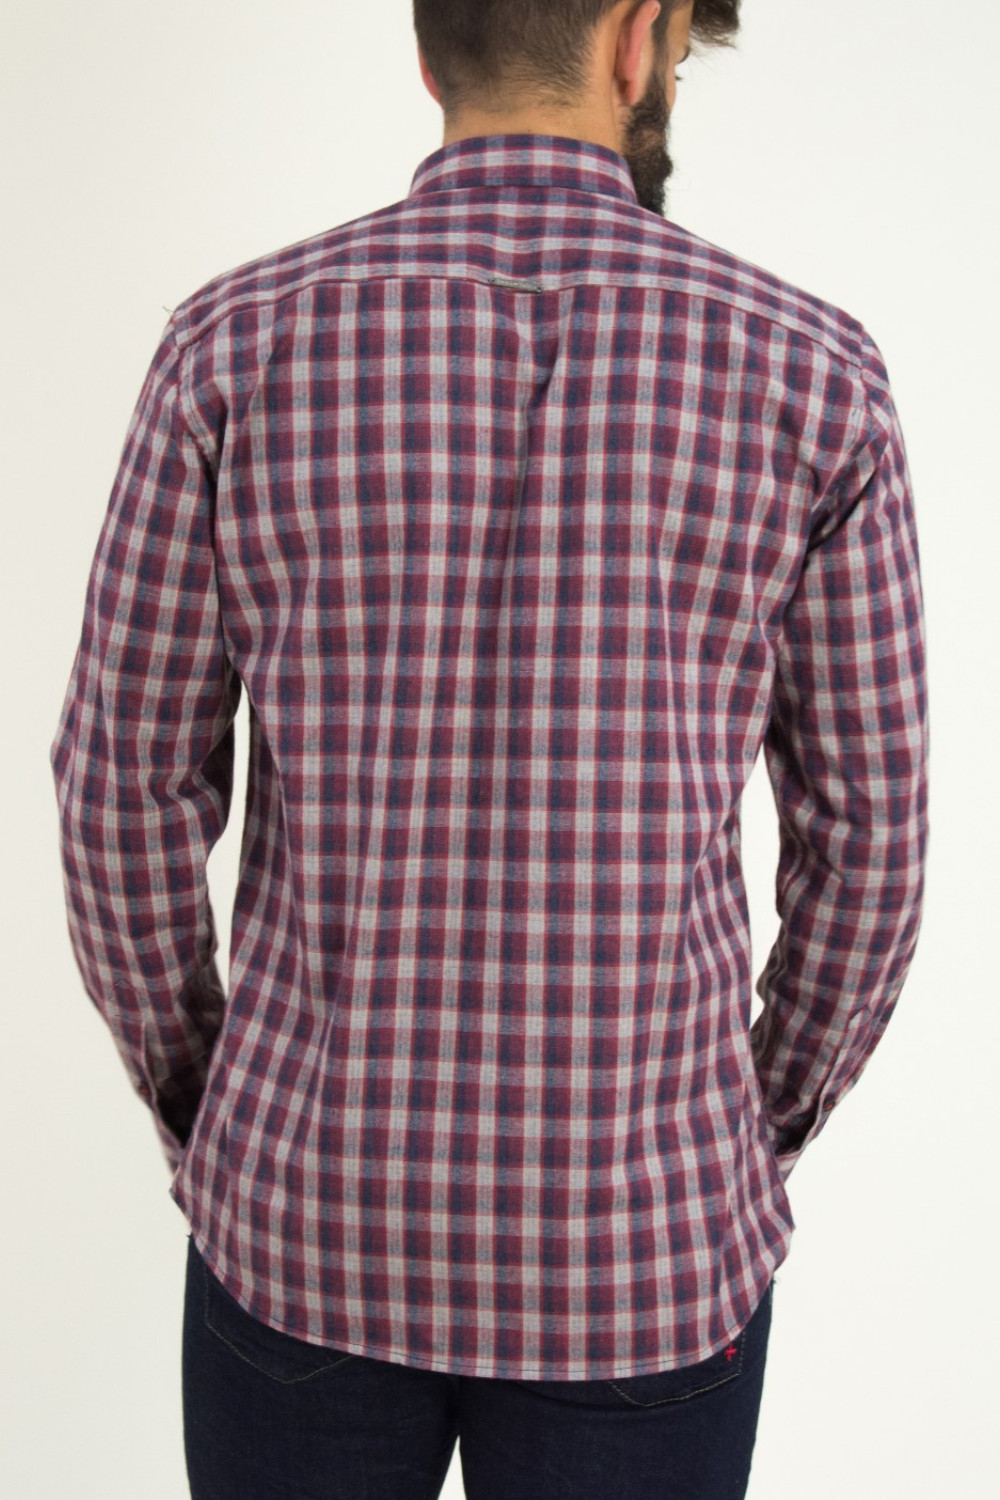 Ανδρικό κόκκινο καρό πουκάμισο με τσεπάκια Ben Tailor 0091